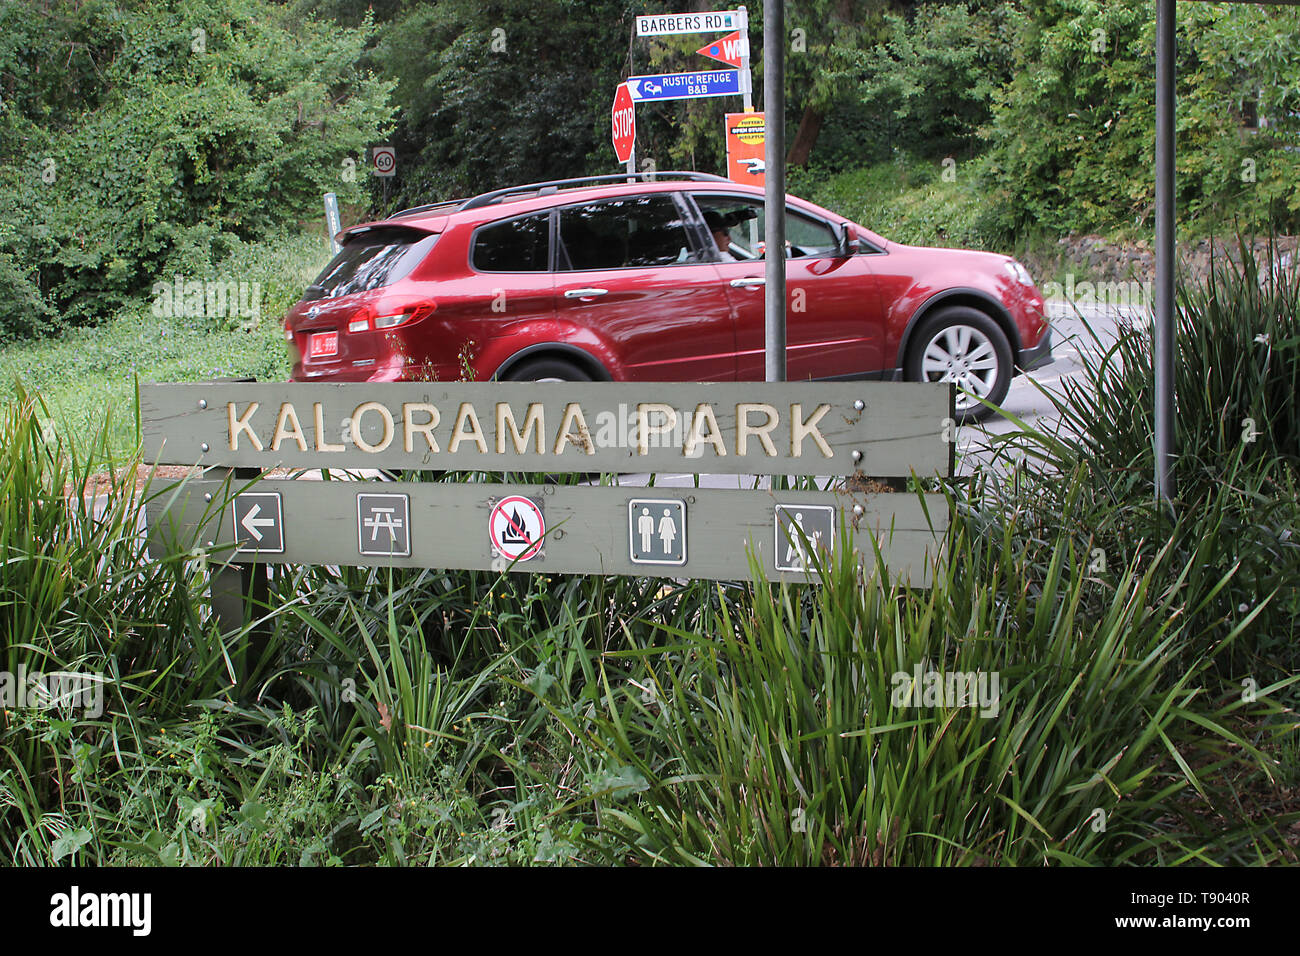 Visitare l'Australia. , Kalorama Park in Victoria è perfetto per picnic, barbecue o semplicemente per un momento di relax mentre vi godete le magnifiche circonda. Foto Stock